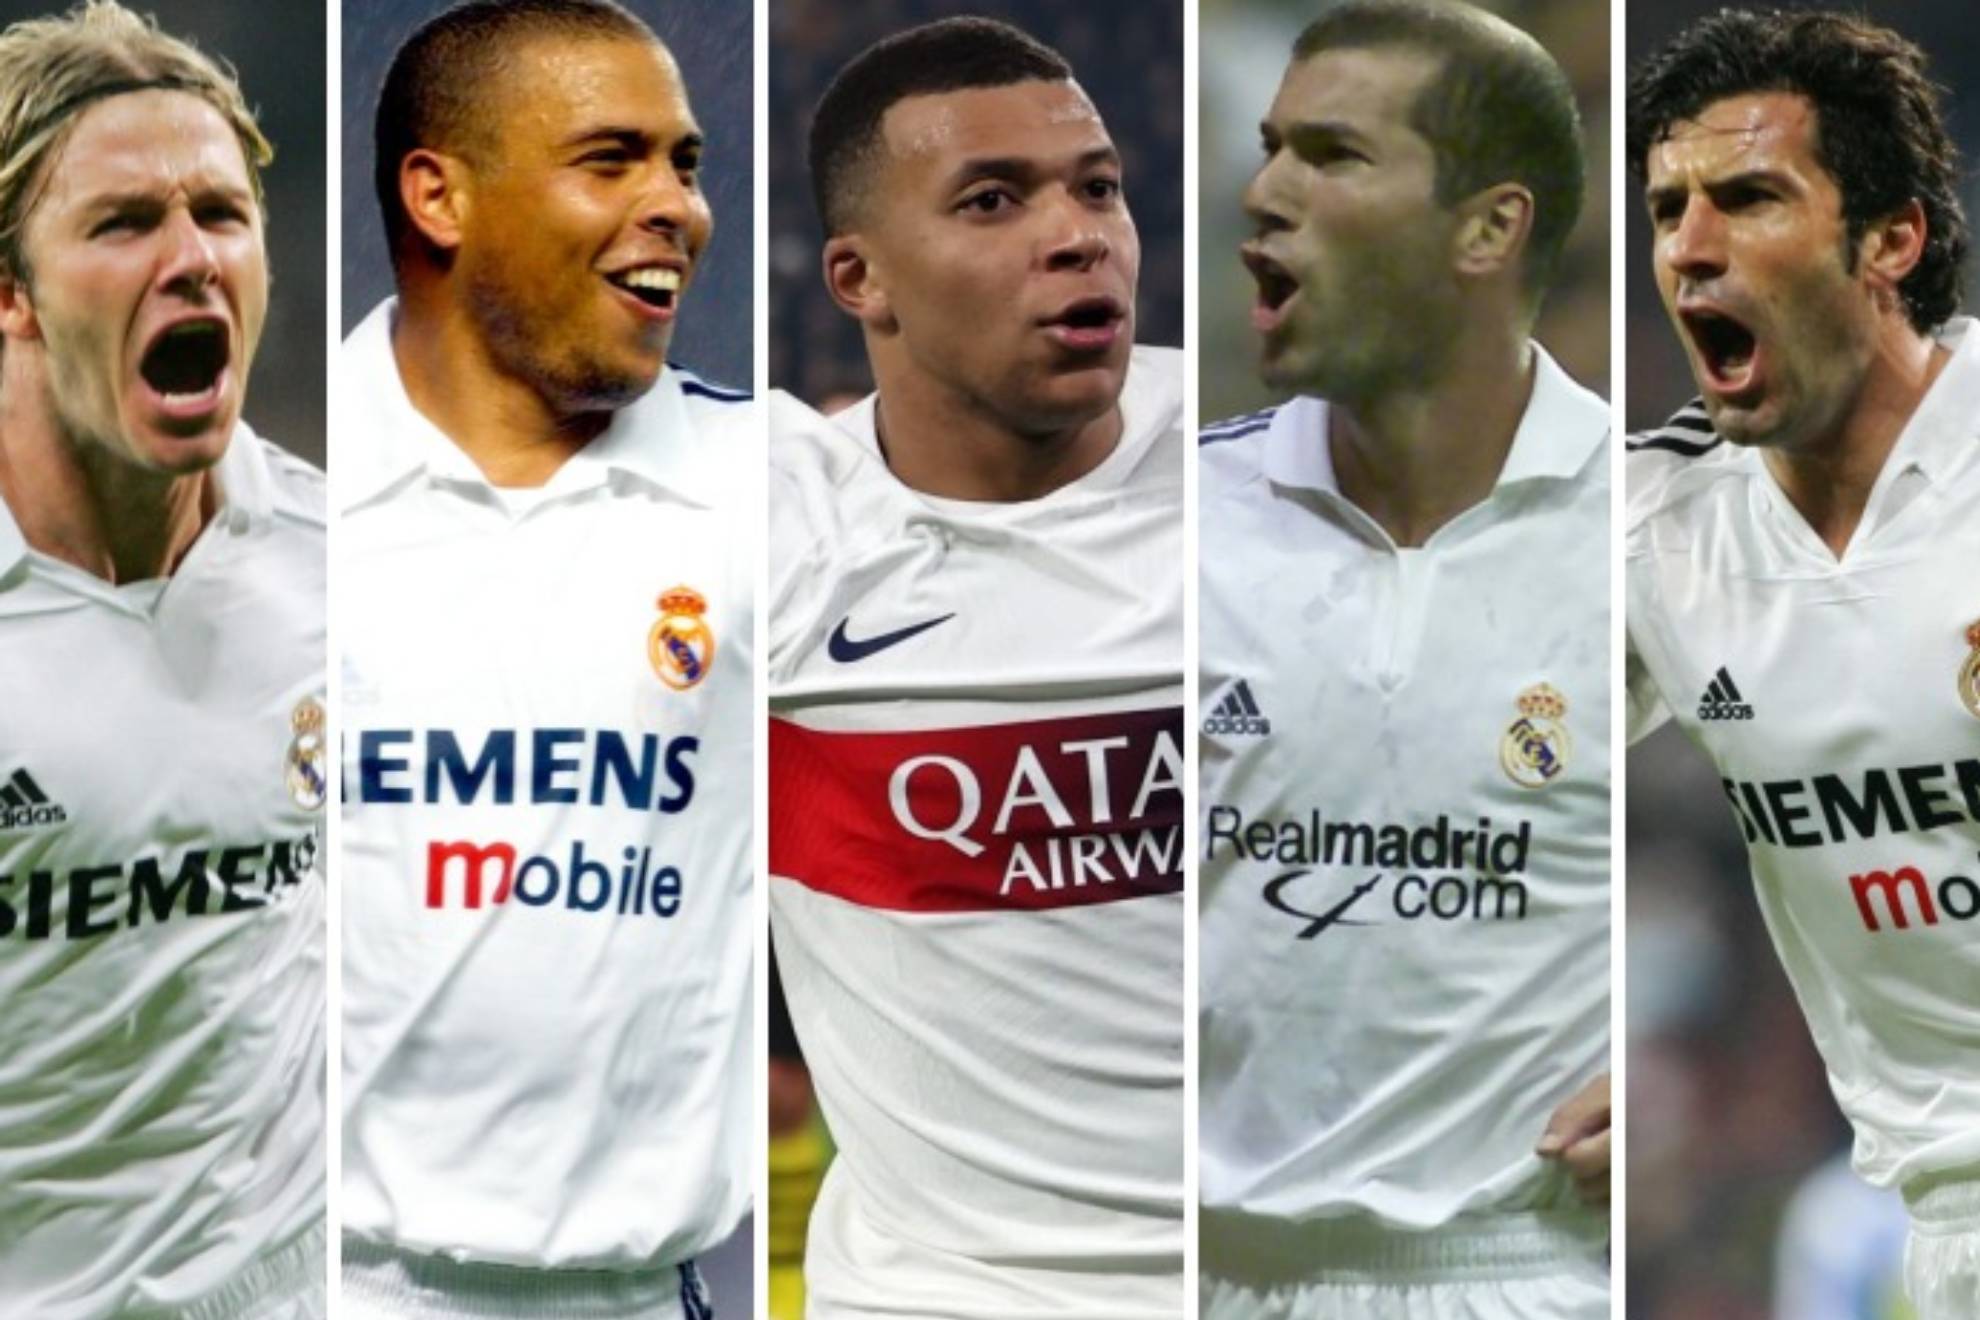 Guti: Florentino lo ha hecho con Figo, Beckham, Ronaldo, Zidane... y ahora mismo el jugador es Mbappé